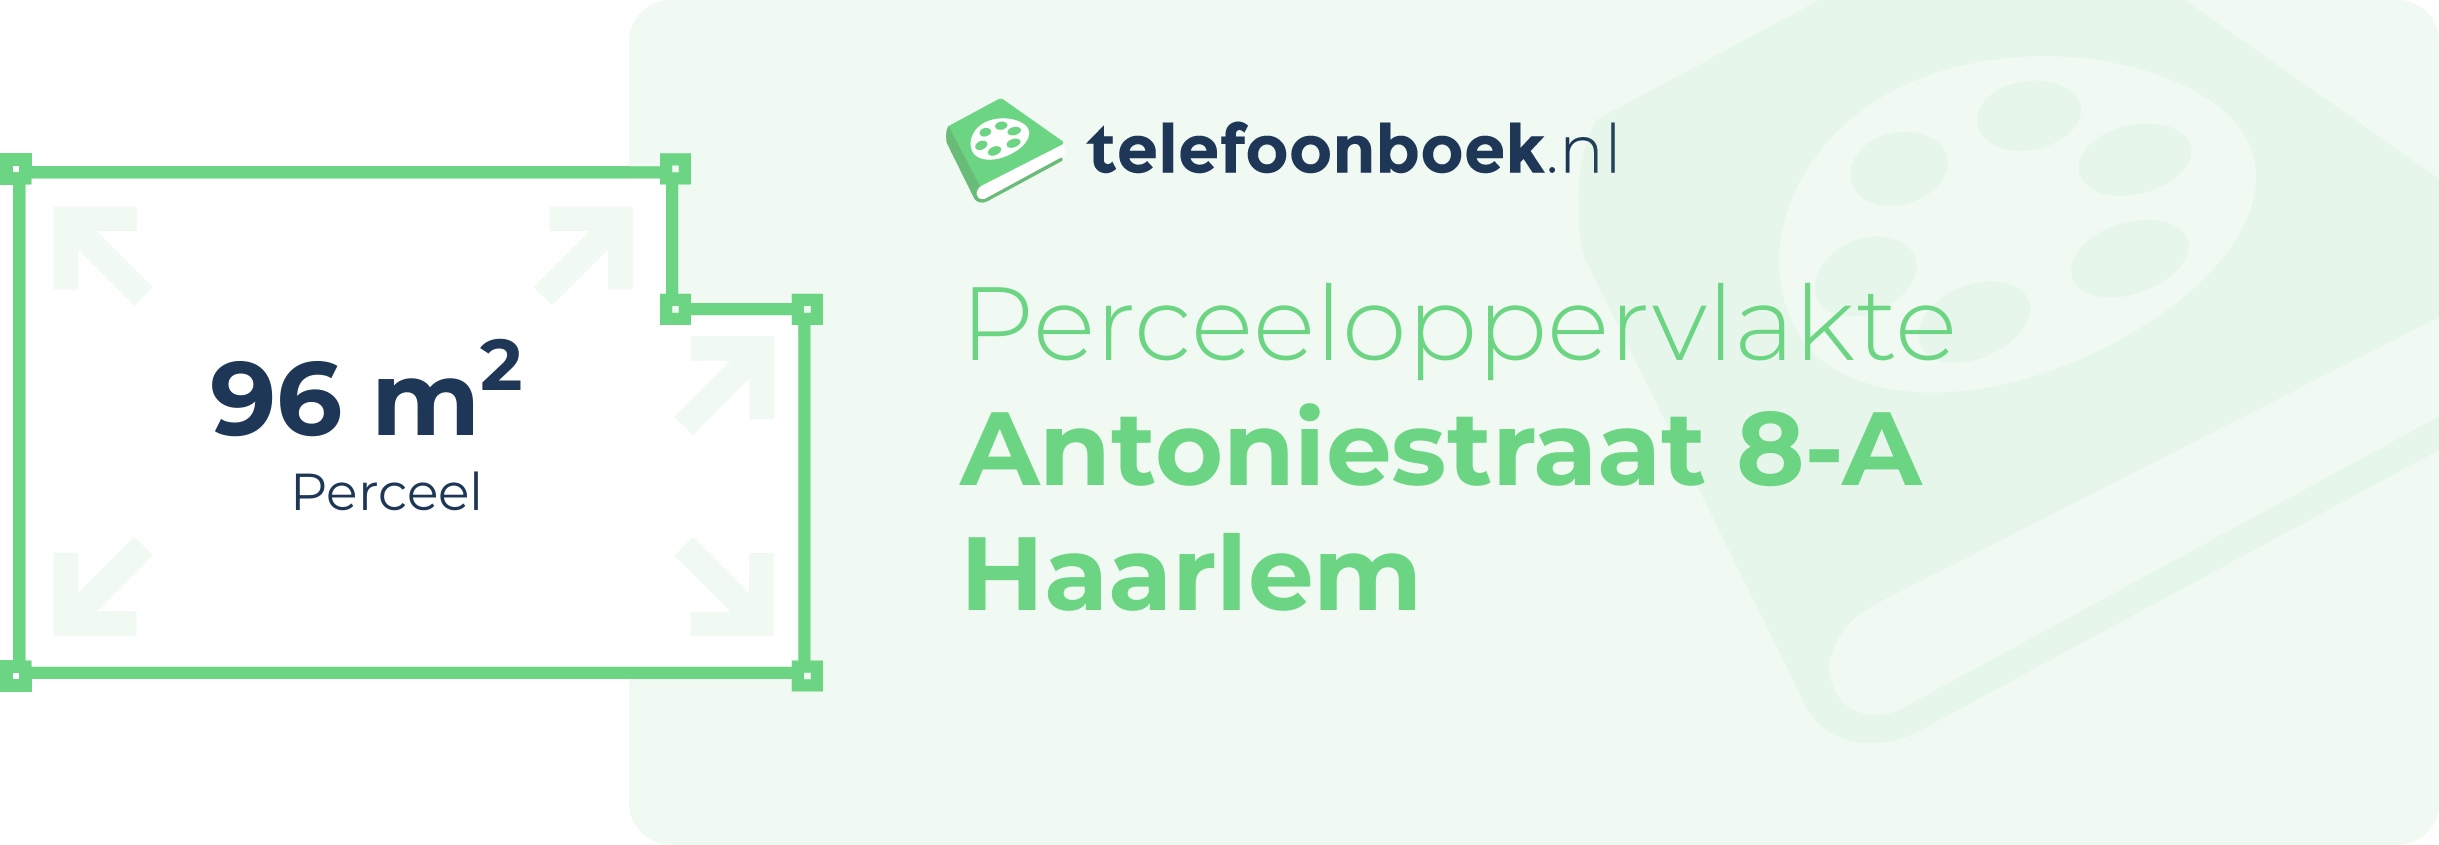 Perceeloppervlakte Antoniestraat 8-A Haarlem